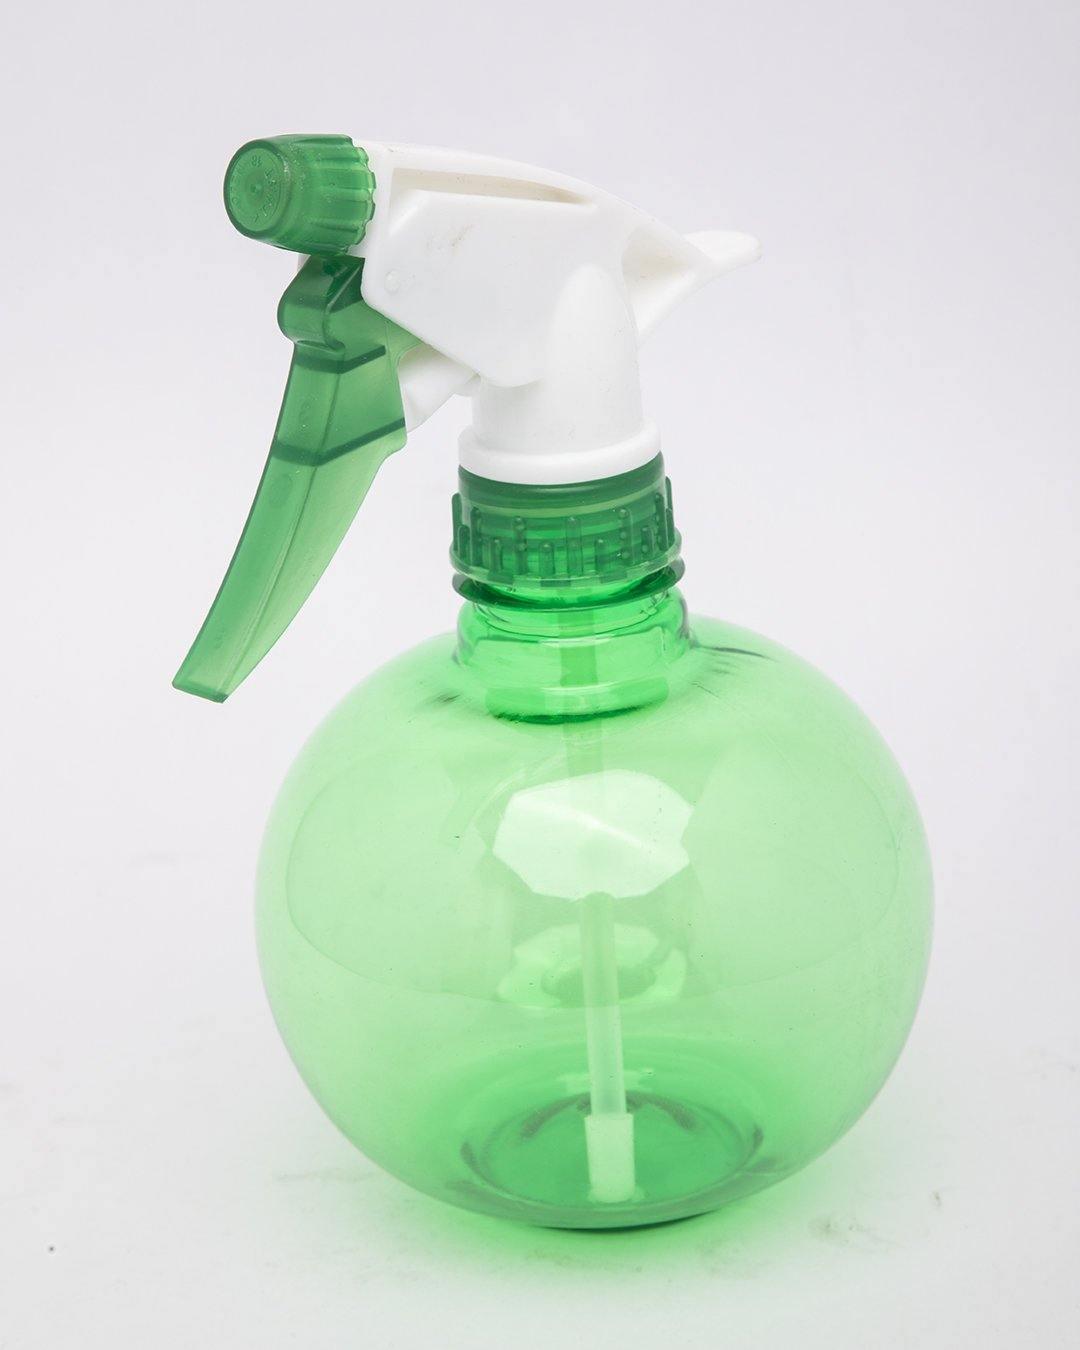 Spray Bottle, Green, Plastic, Set of 2, 450 mL - MARKET 99